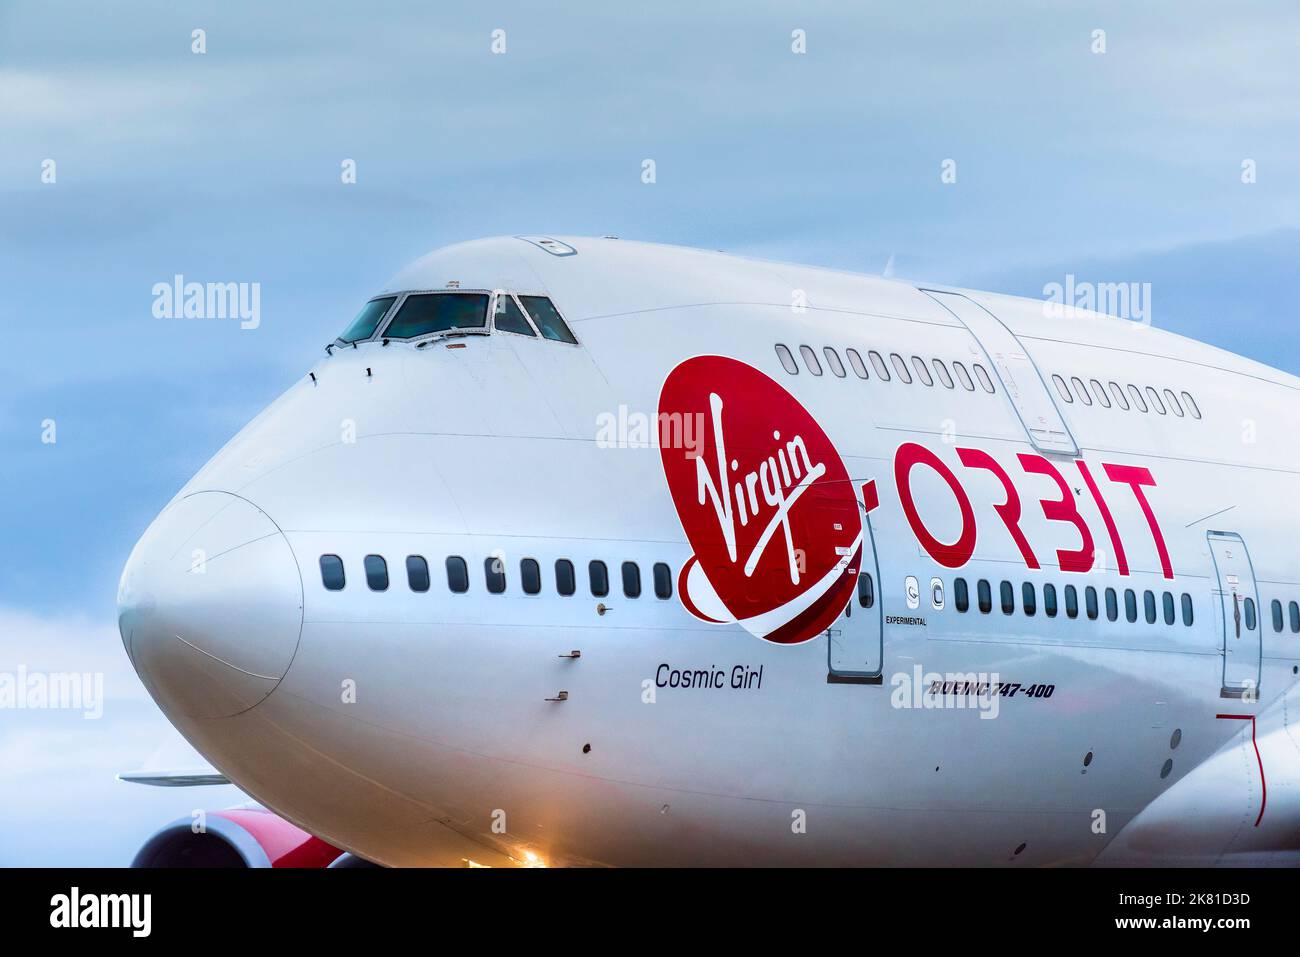 Ein historischer Moment, als die Virgin Orbit, Cosmic Girl, eine 747-400, zu einer Raketenstartplattform umgebaut wurde, die auf der Start- und Landebahn des Spaceport C zum Stillstand kam Stockfoto